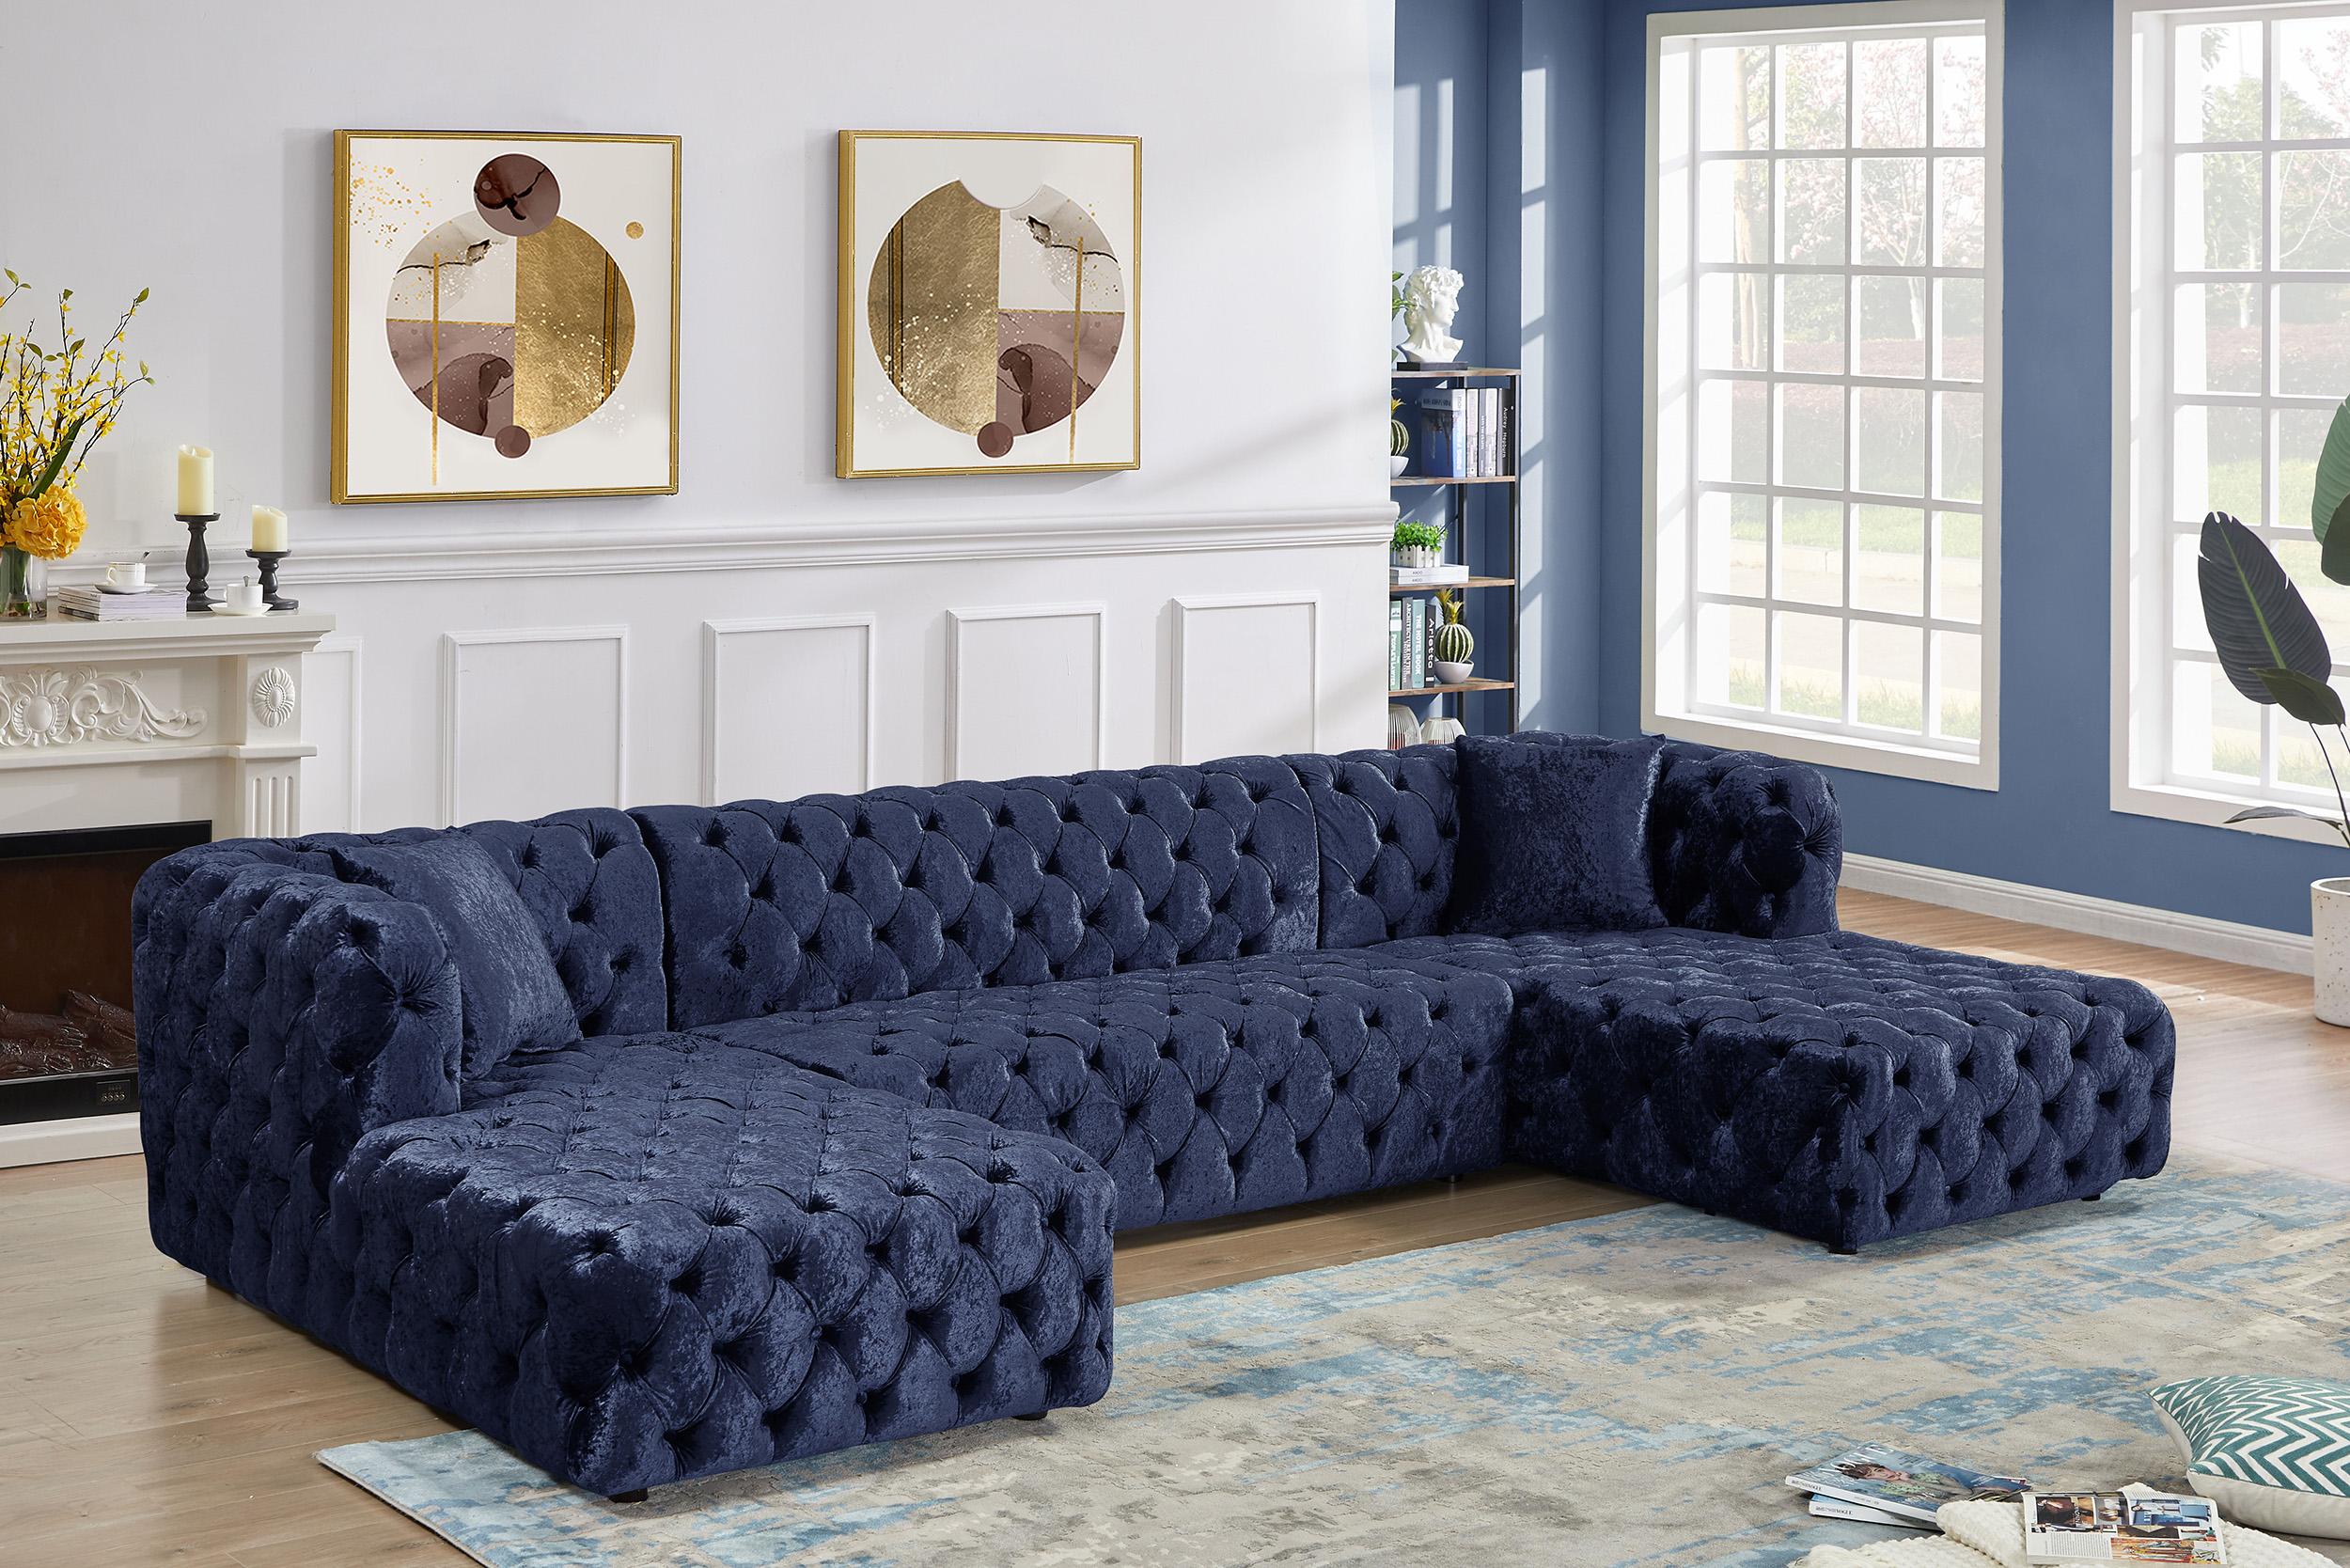 

    
676Navy-Sectional Meridian Furniture Modular Sectional Sofa
